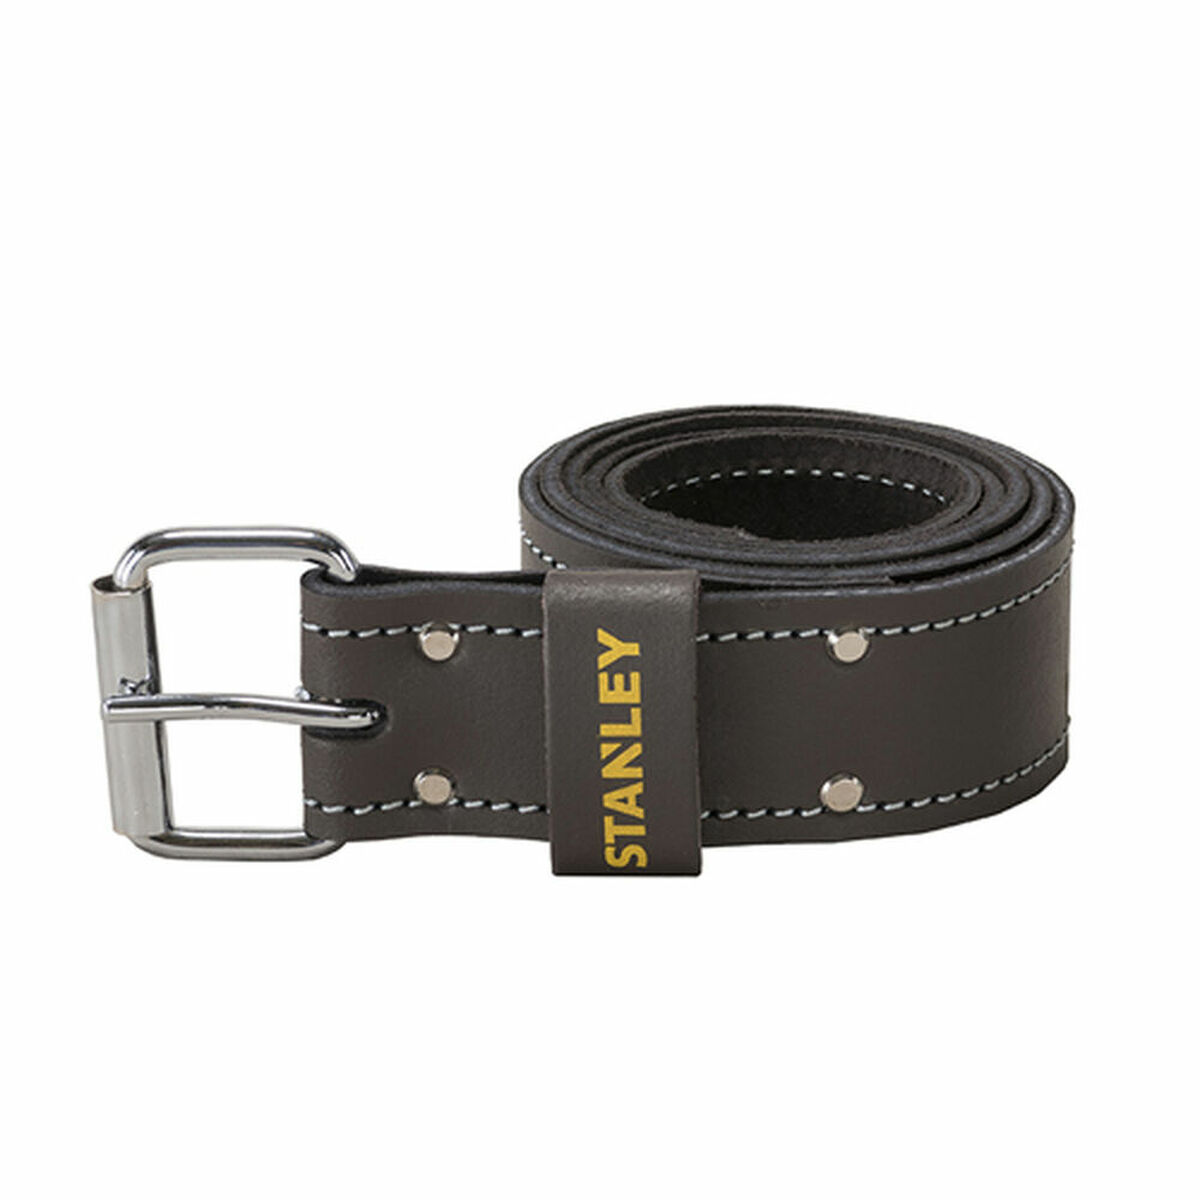 Adjustable belt Stanley Leather